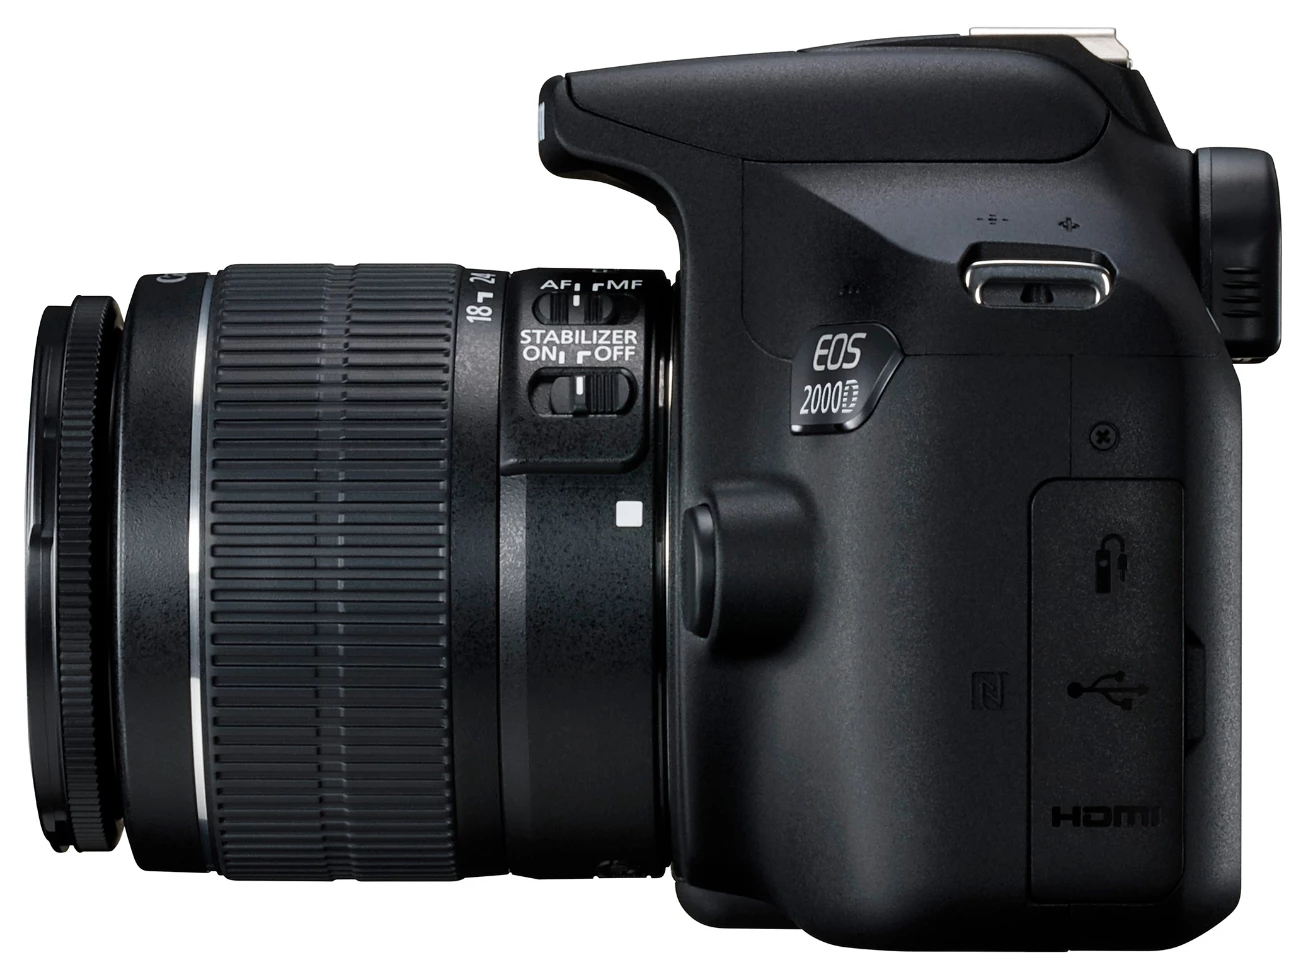 Aparat foto DSLR Canon EOS 2000D + EF-S 18-55 IS II, Negru